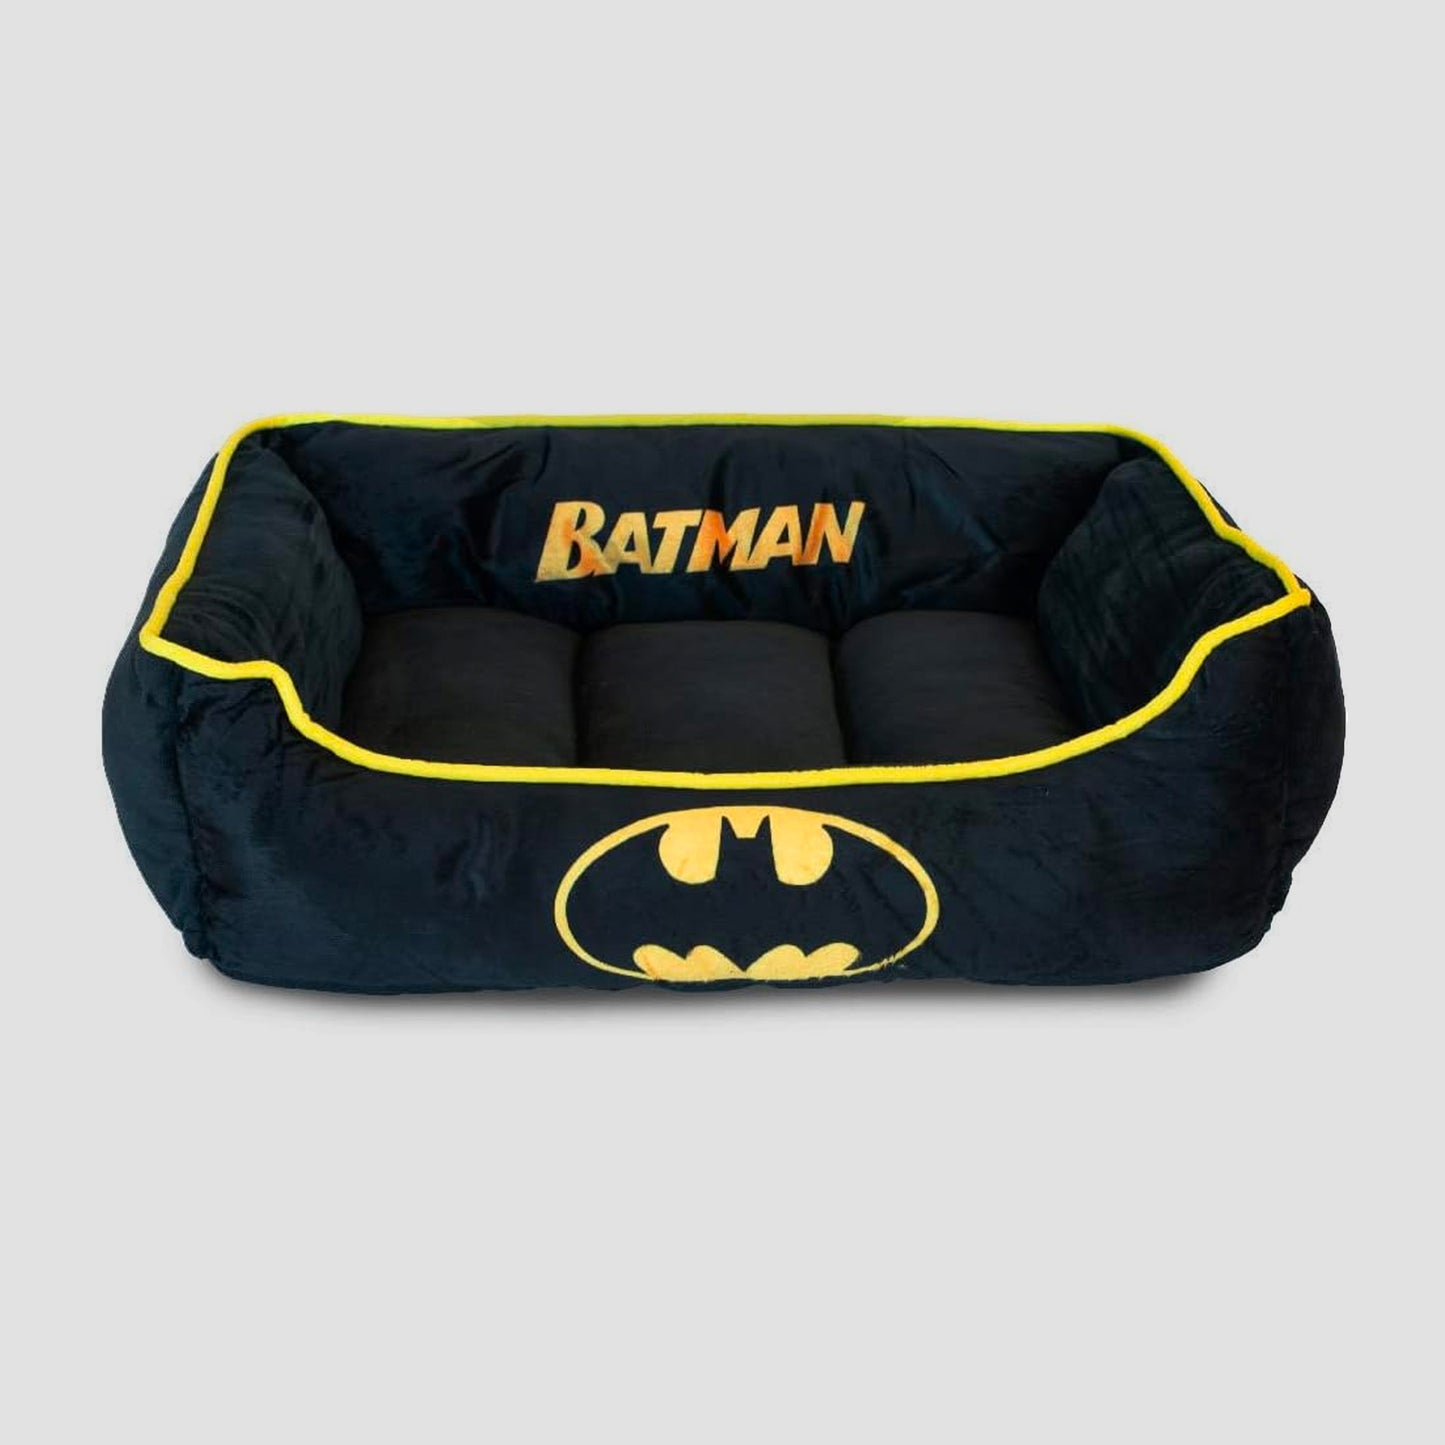 Batman (DC Comics) Medium Pet Plush Bed